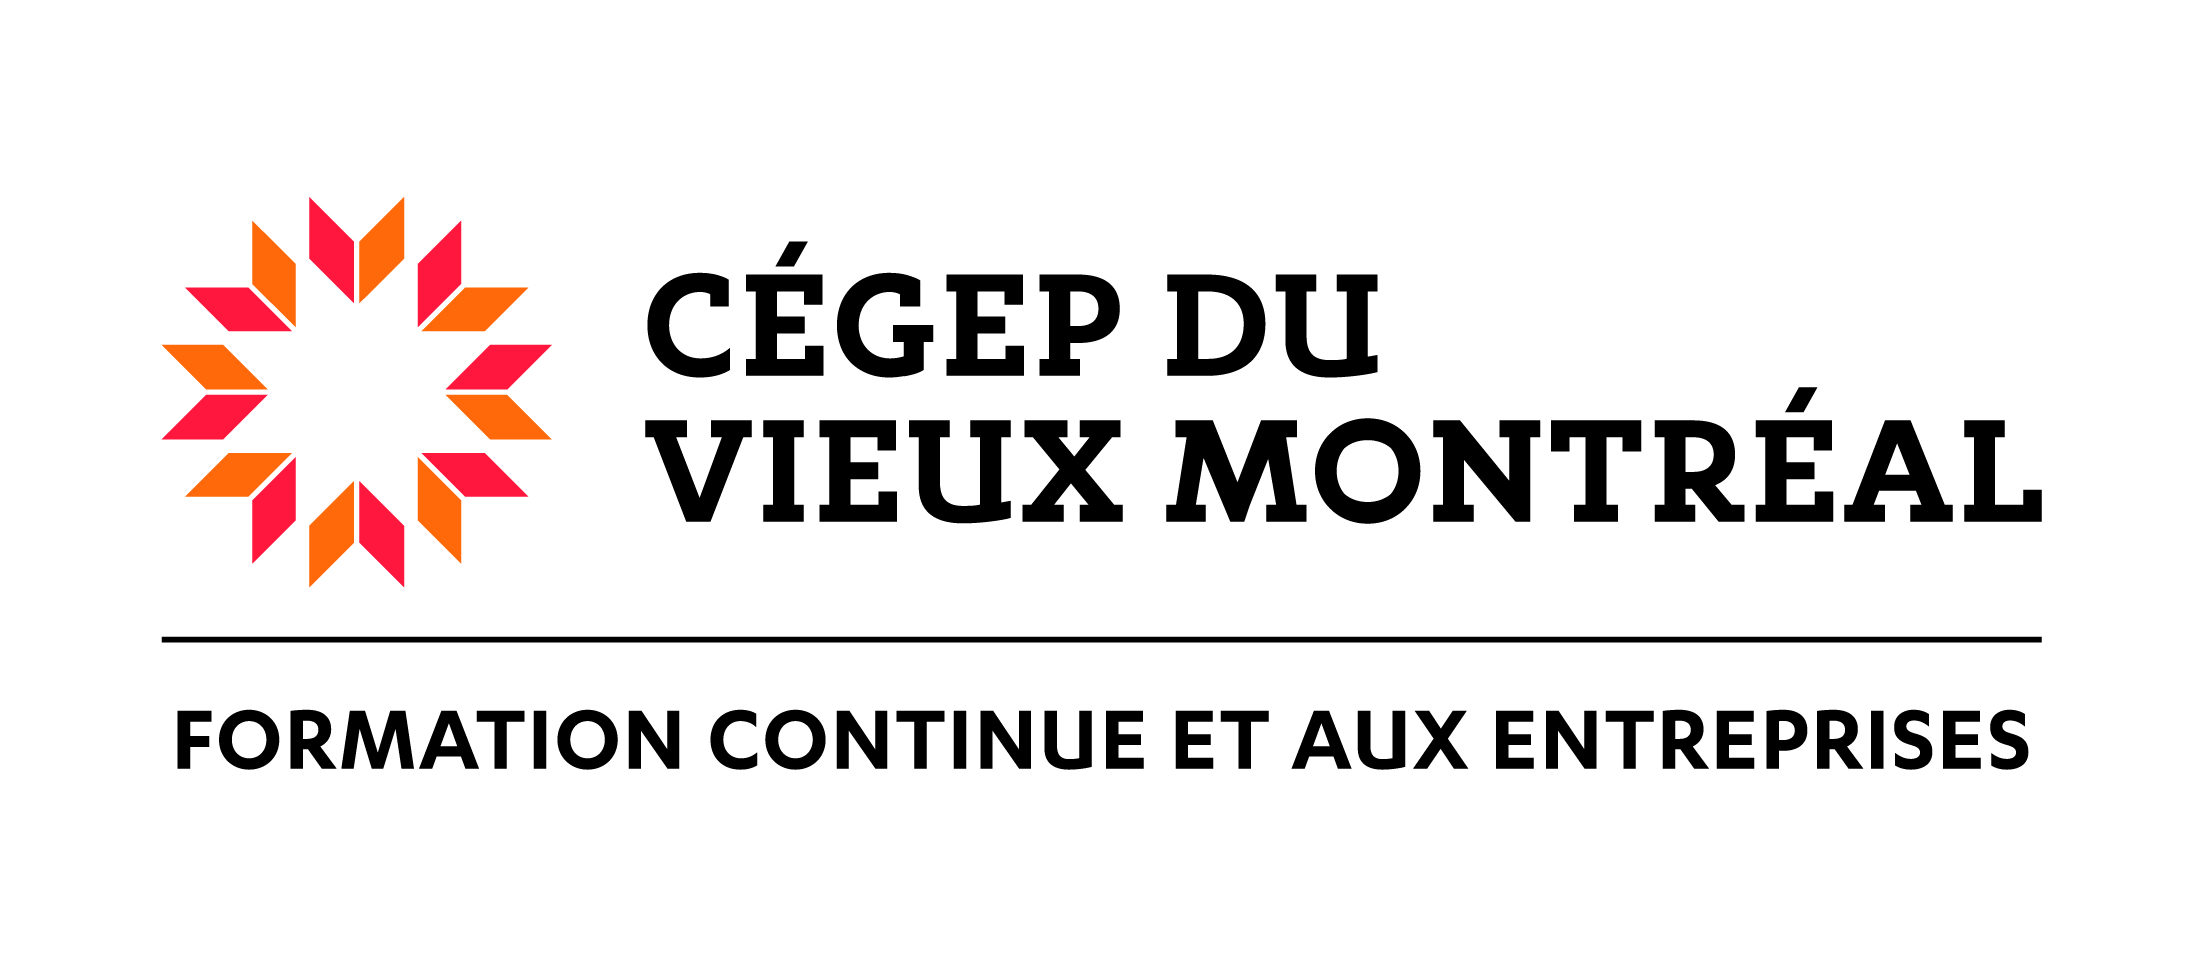 Cégep du Vieux Montréal – Formation continue et aux entreprises